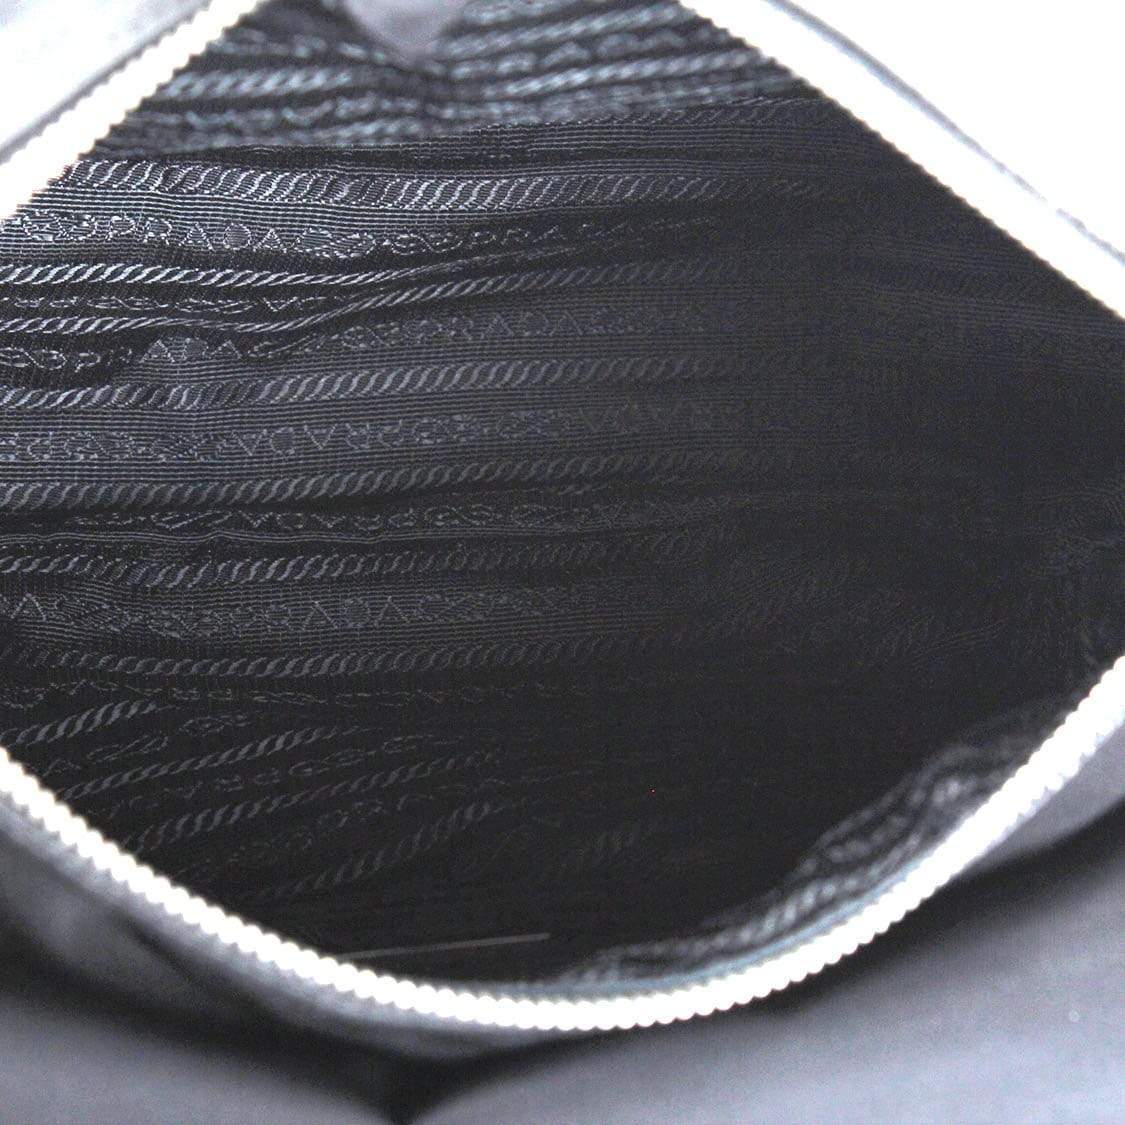 Prada Prada Black Tessuto Messenger Bag - RCL1155